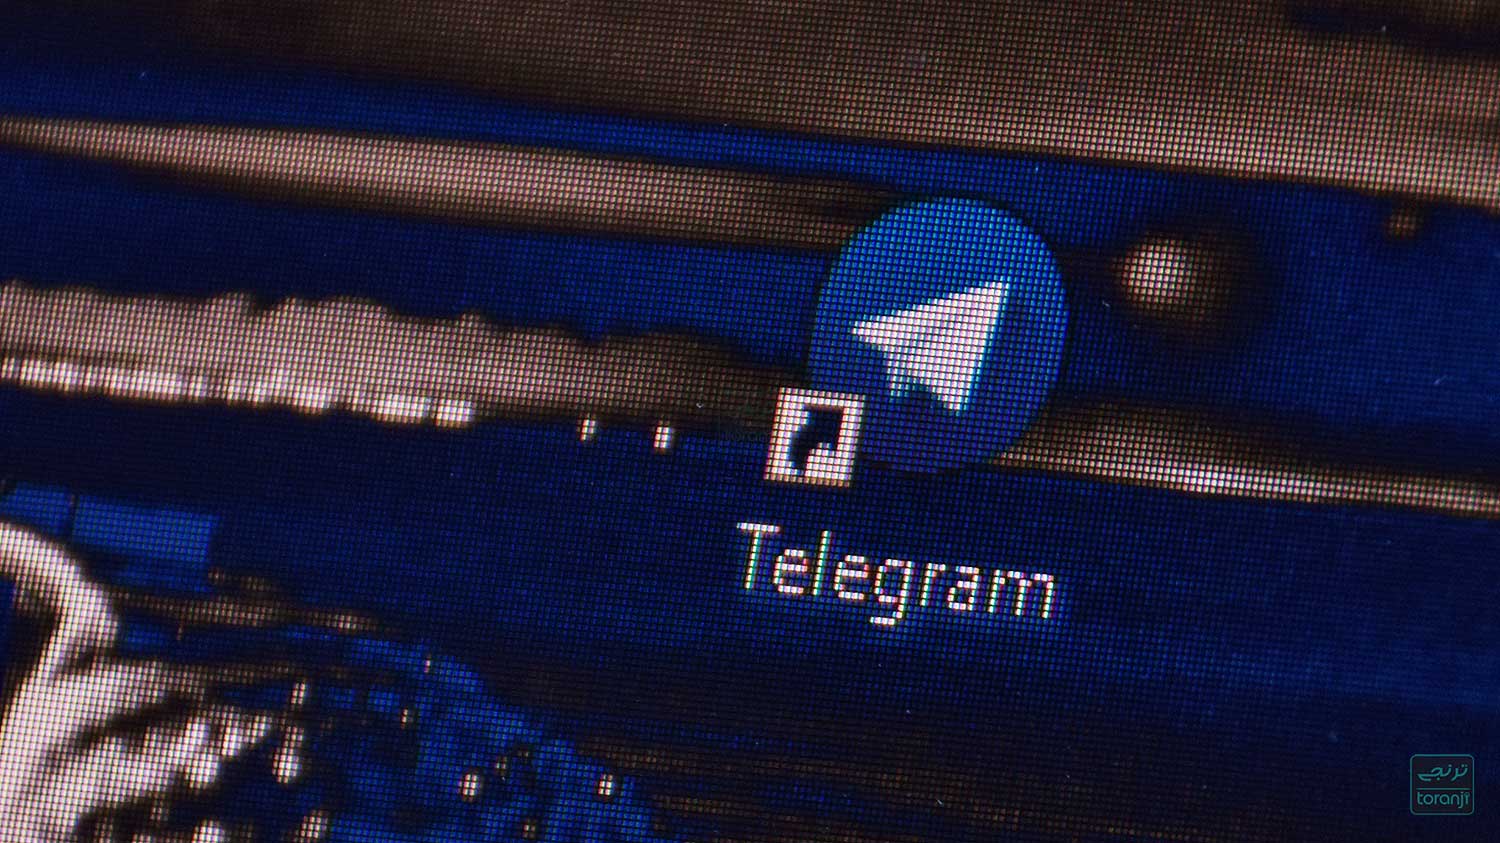 رفع فیلتر تلگرام در اختیار من نیست؛ وزیر ارتباطات